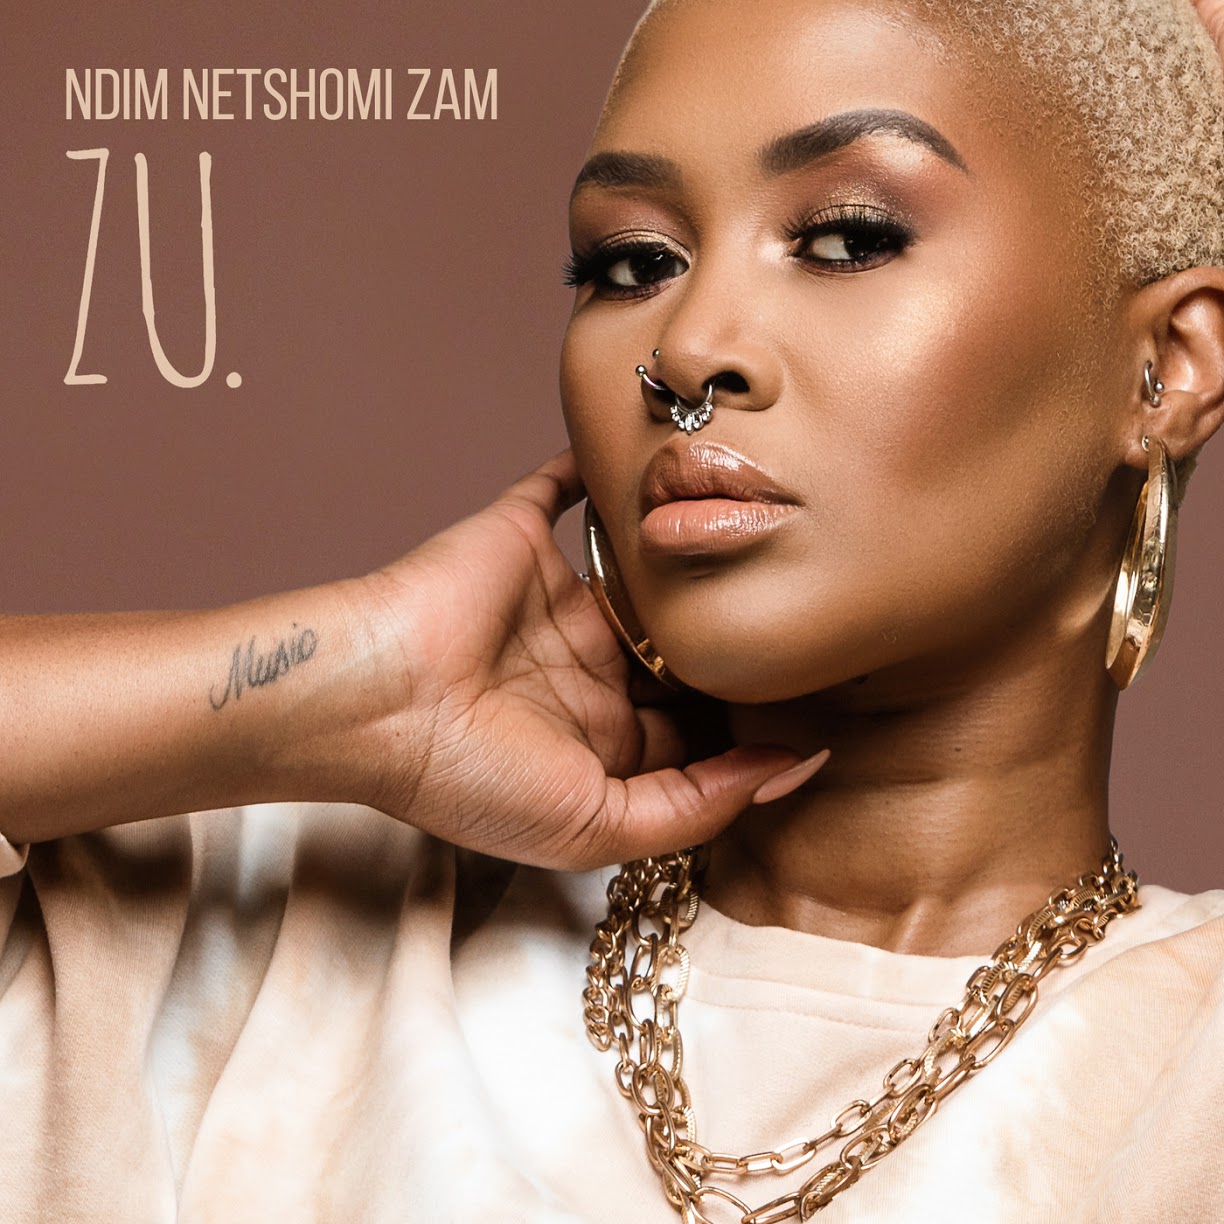 ZU.  Ndim Netshomi Zam (EP) Album Cover